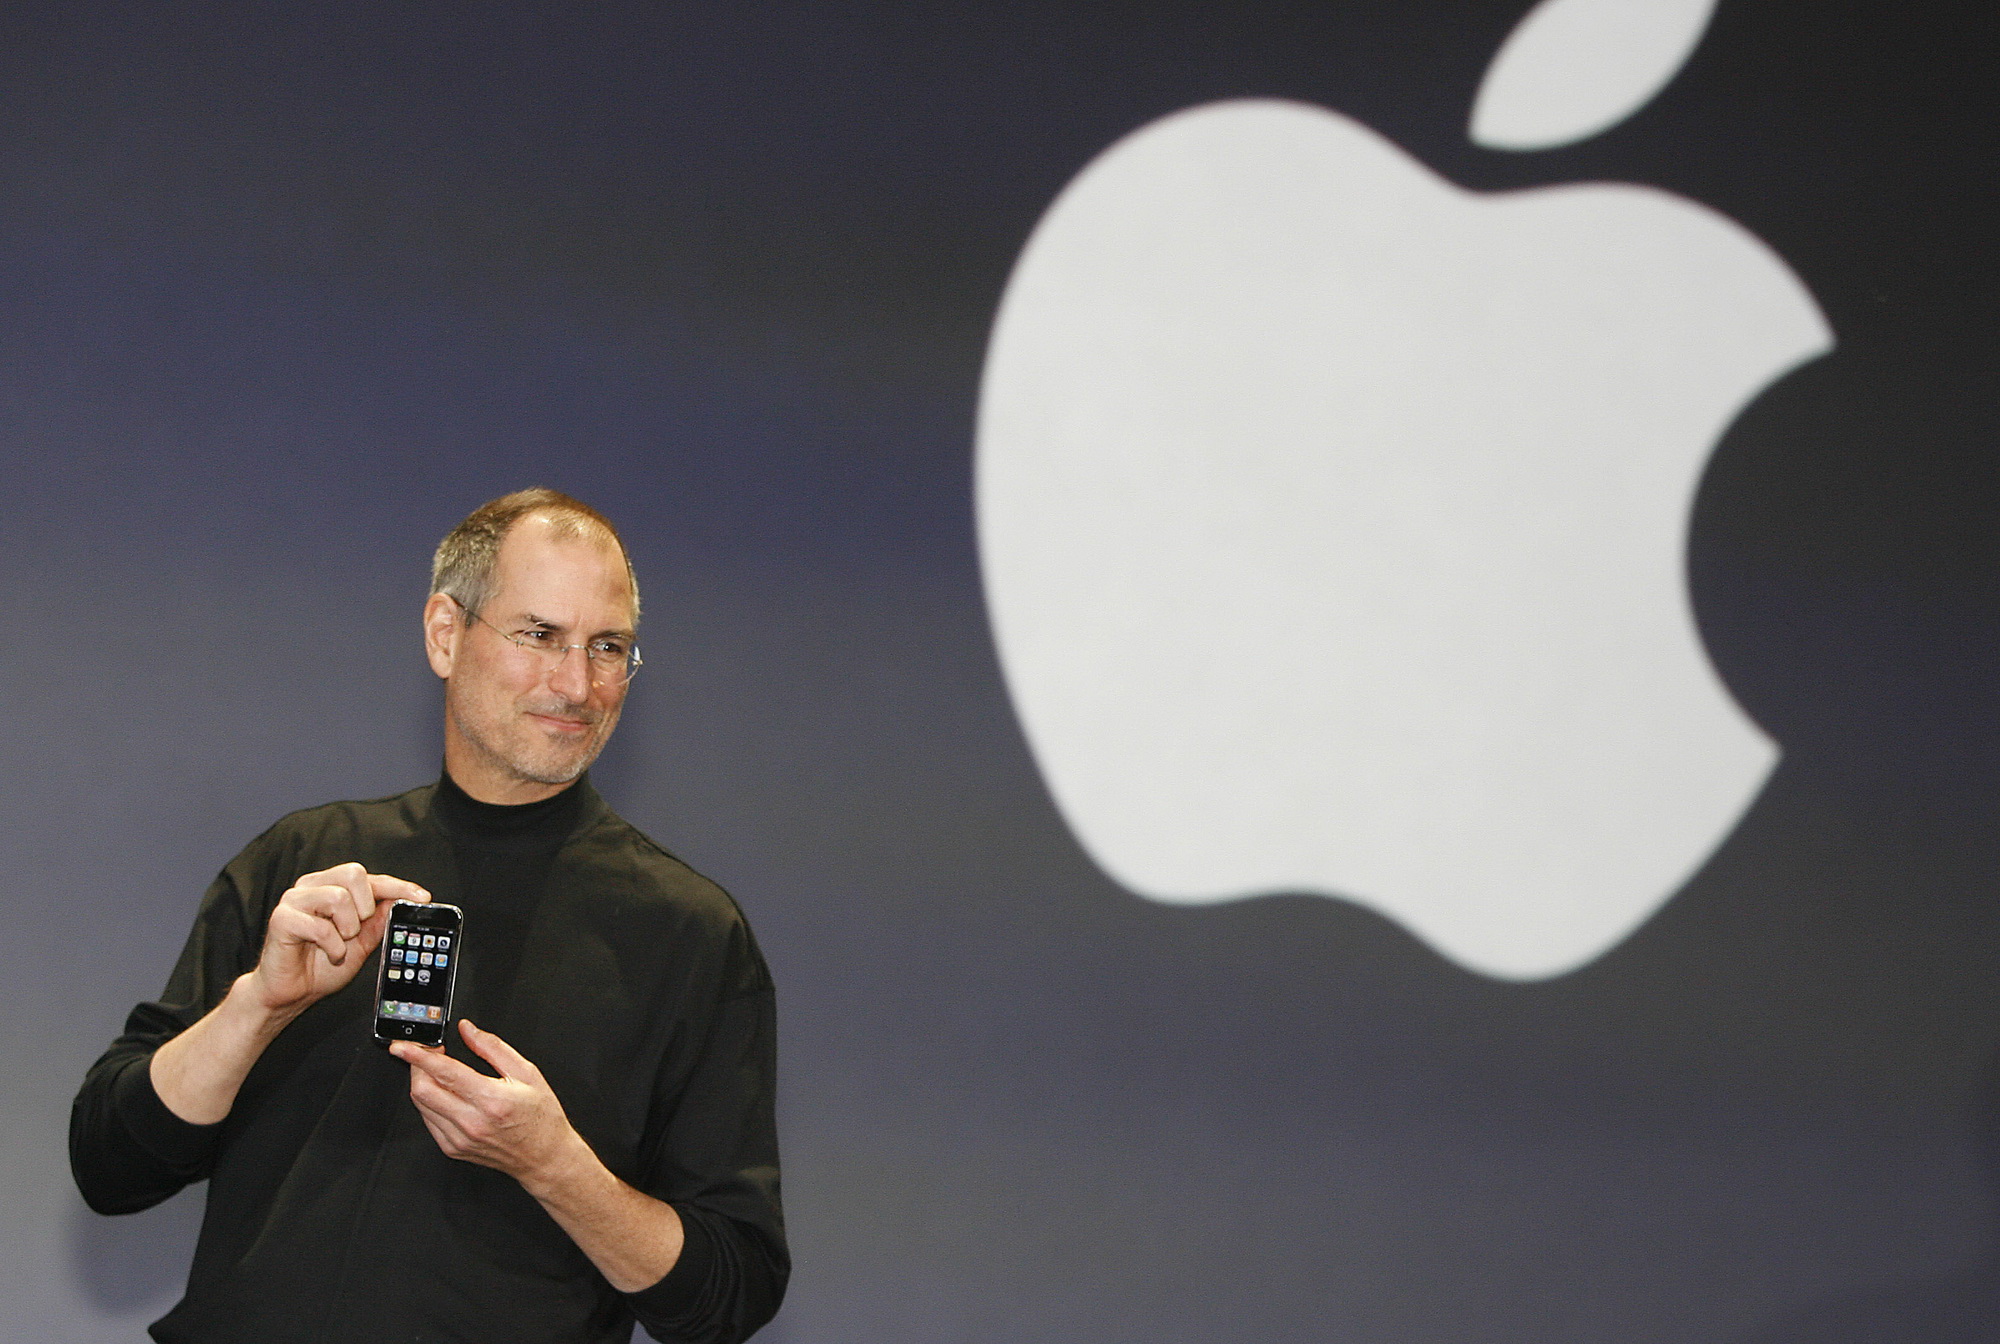 Steve Jobs giới thiệu chiếc iPhone đầu tiên vào năm 2007